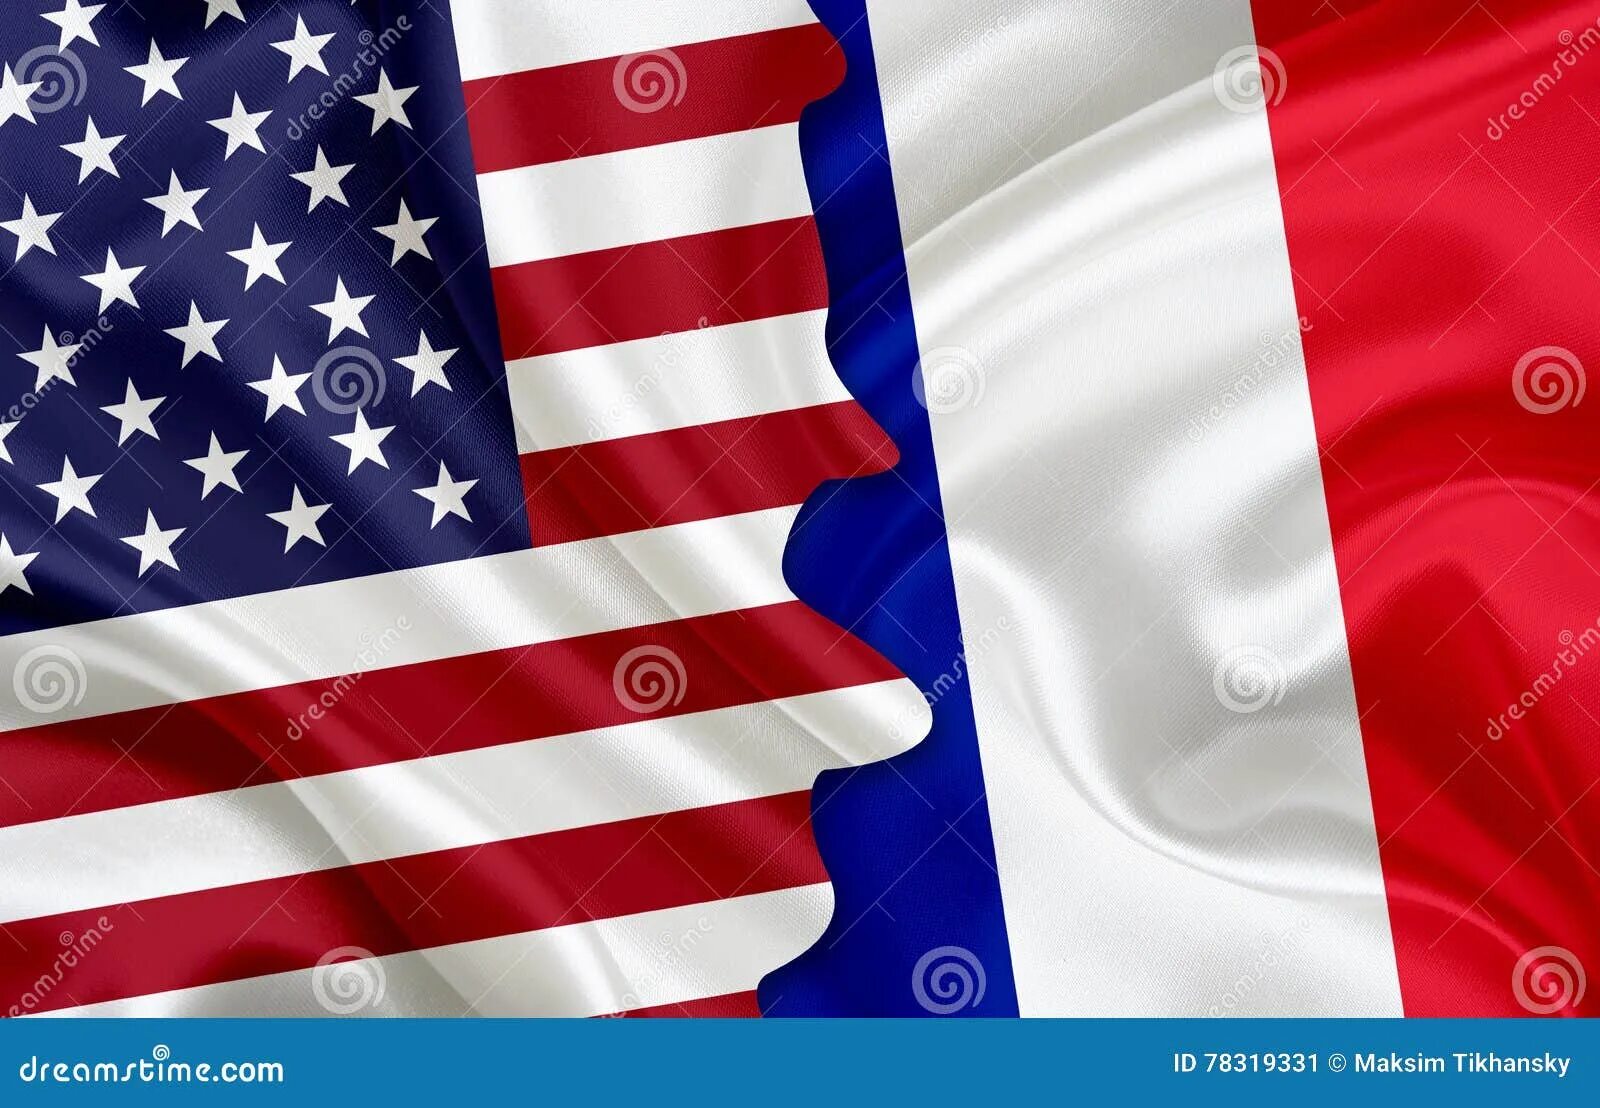 Франция и США. Флаг Америки и Франции. Французский и американский флаги. Франция против США. Сша против франции